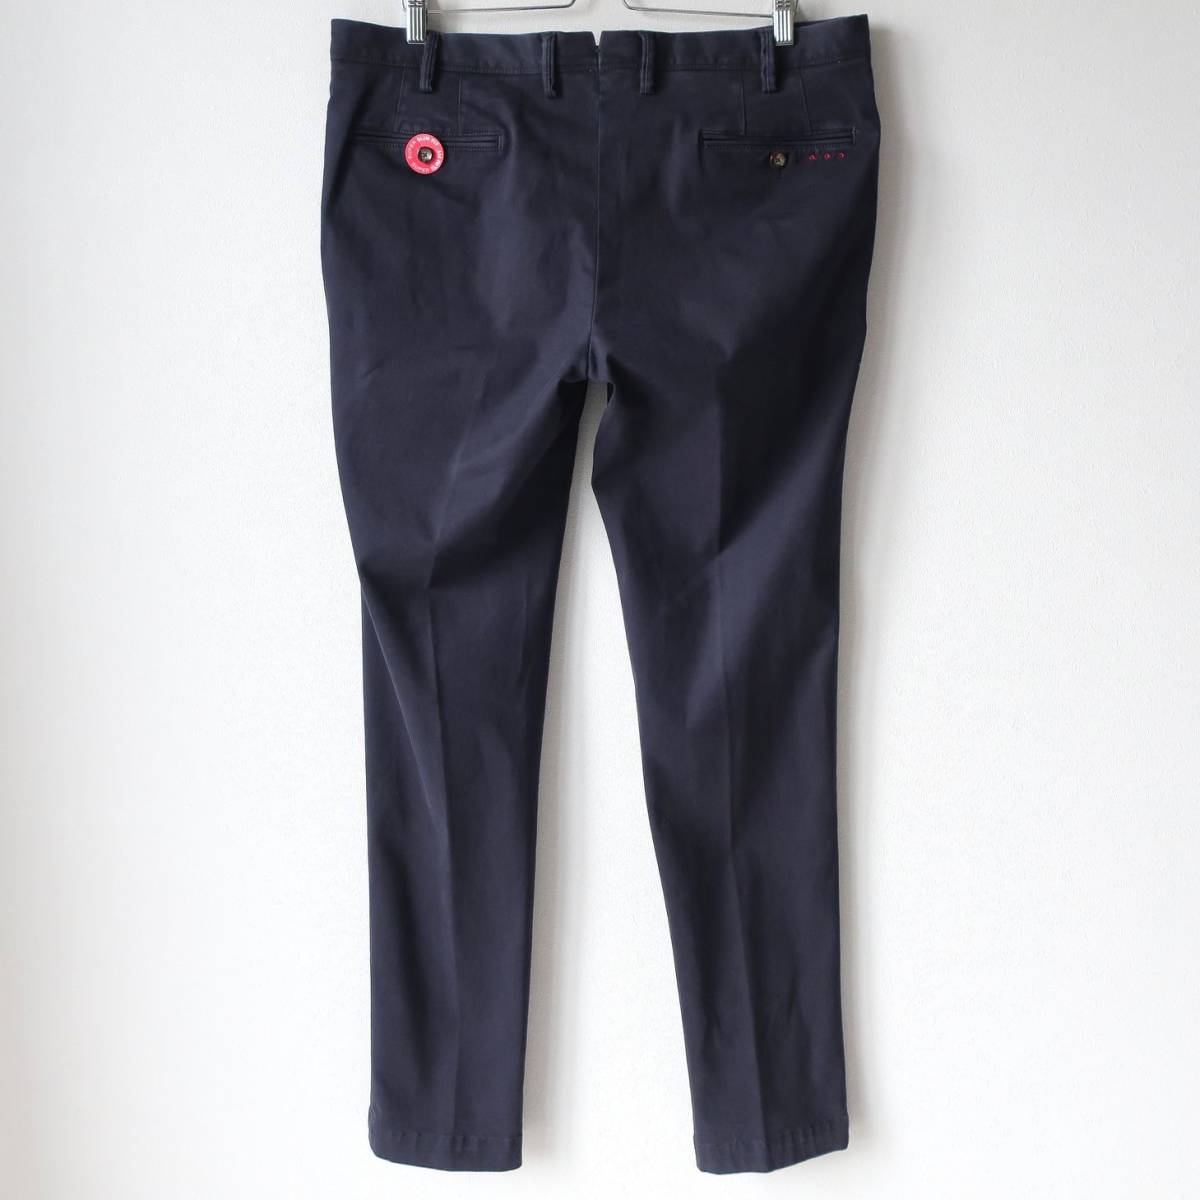  new goods PT01pi- tea Zero One men's stretch chinos skinny slim pants PT TORINO dark blue dark navy 54 3XL 4L size 